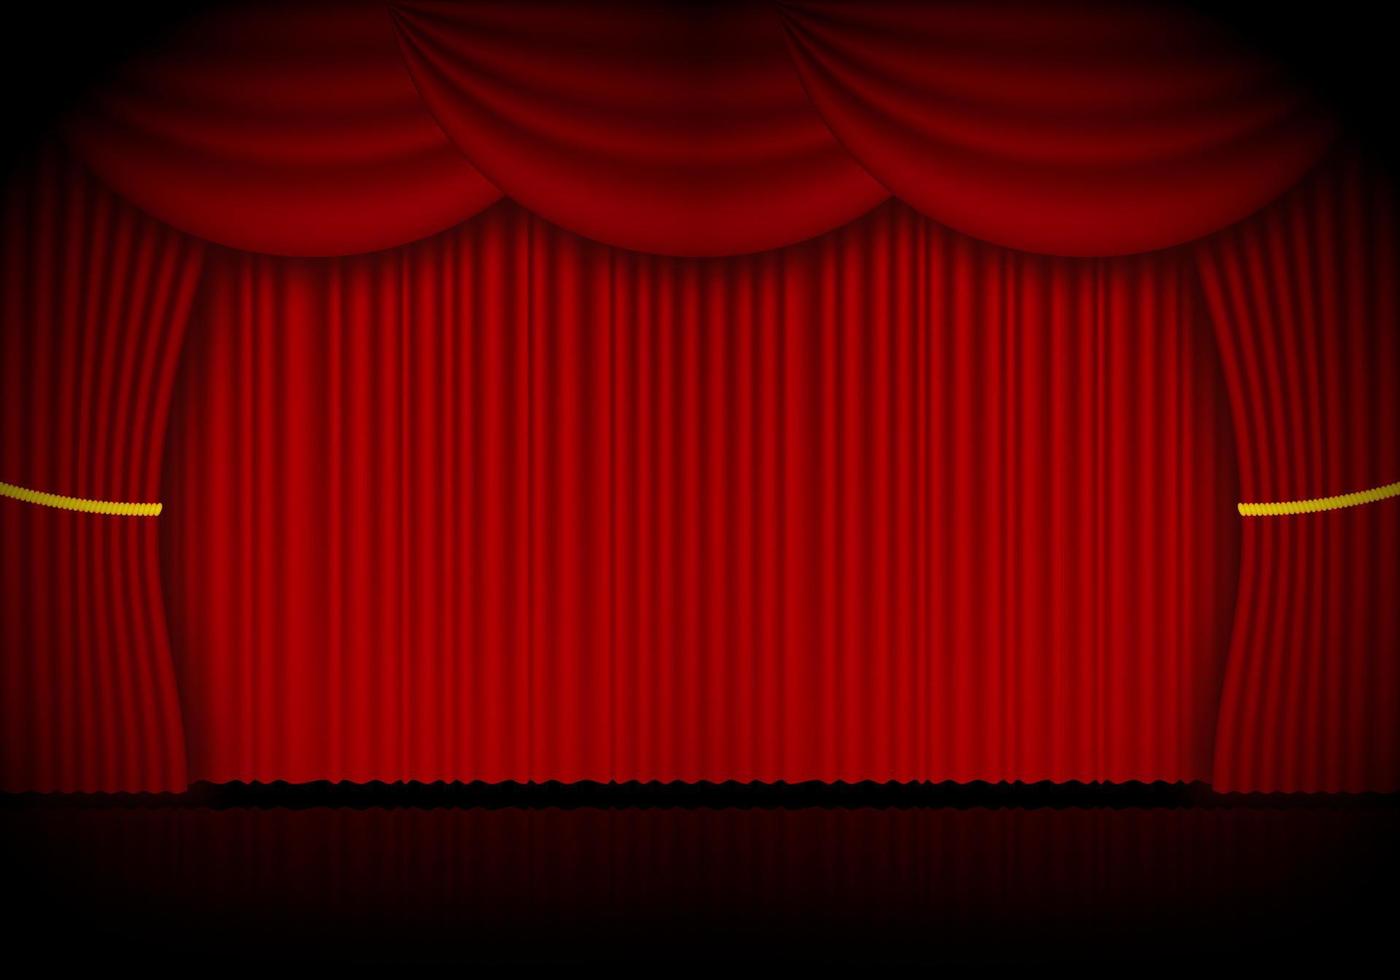 roter vorhang opern-, kino- oder theaterbühnenvorhänge. Spotlight auf geschlossenem Samtvorhanghintergrund. Vektor-Illustration vektor